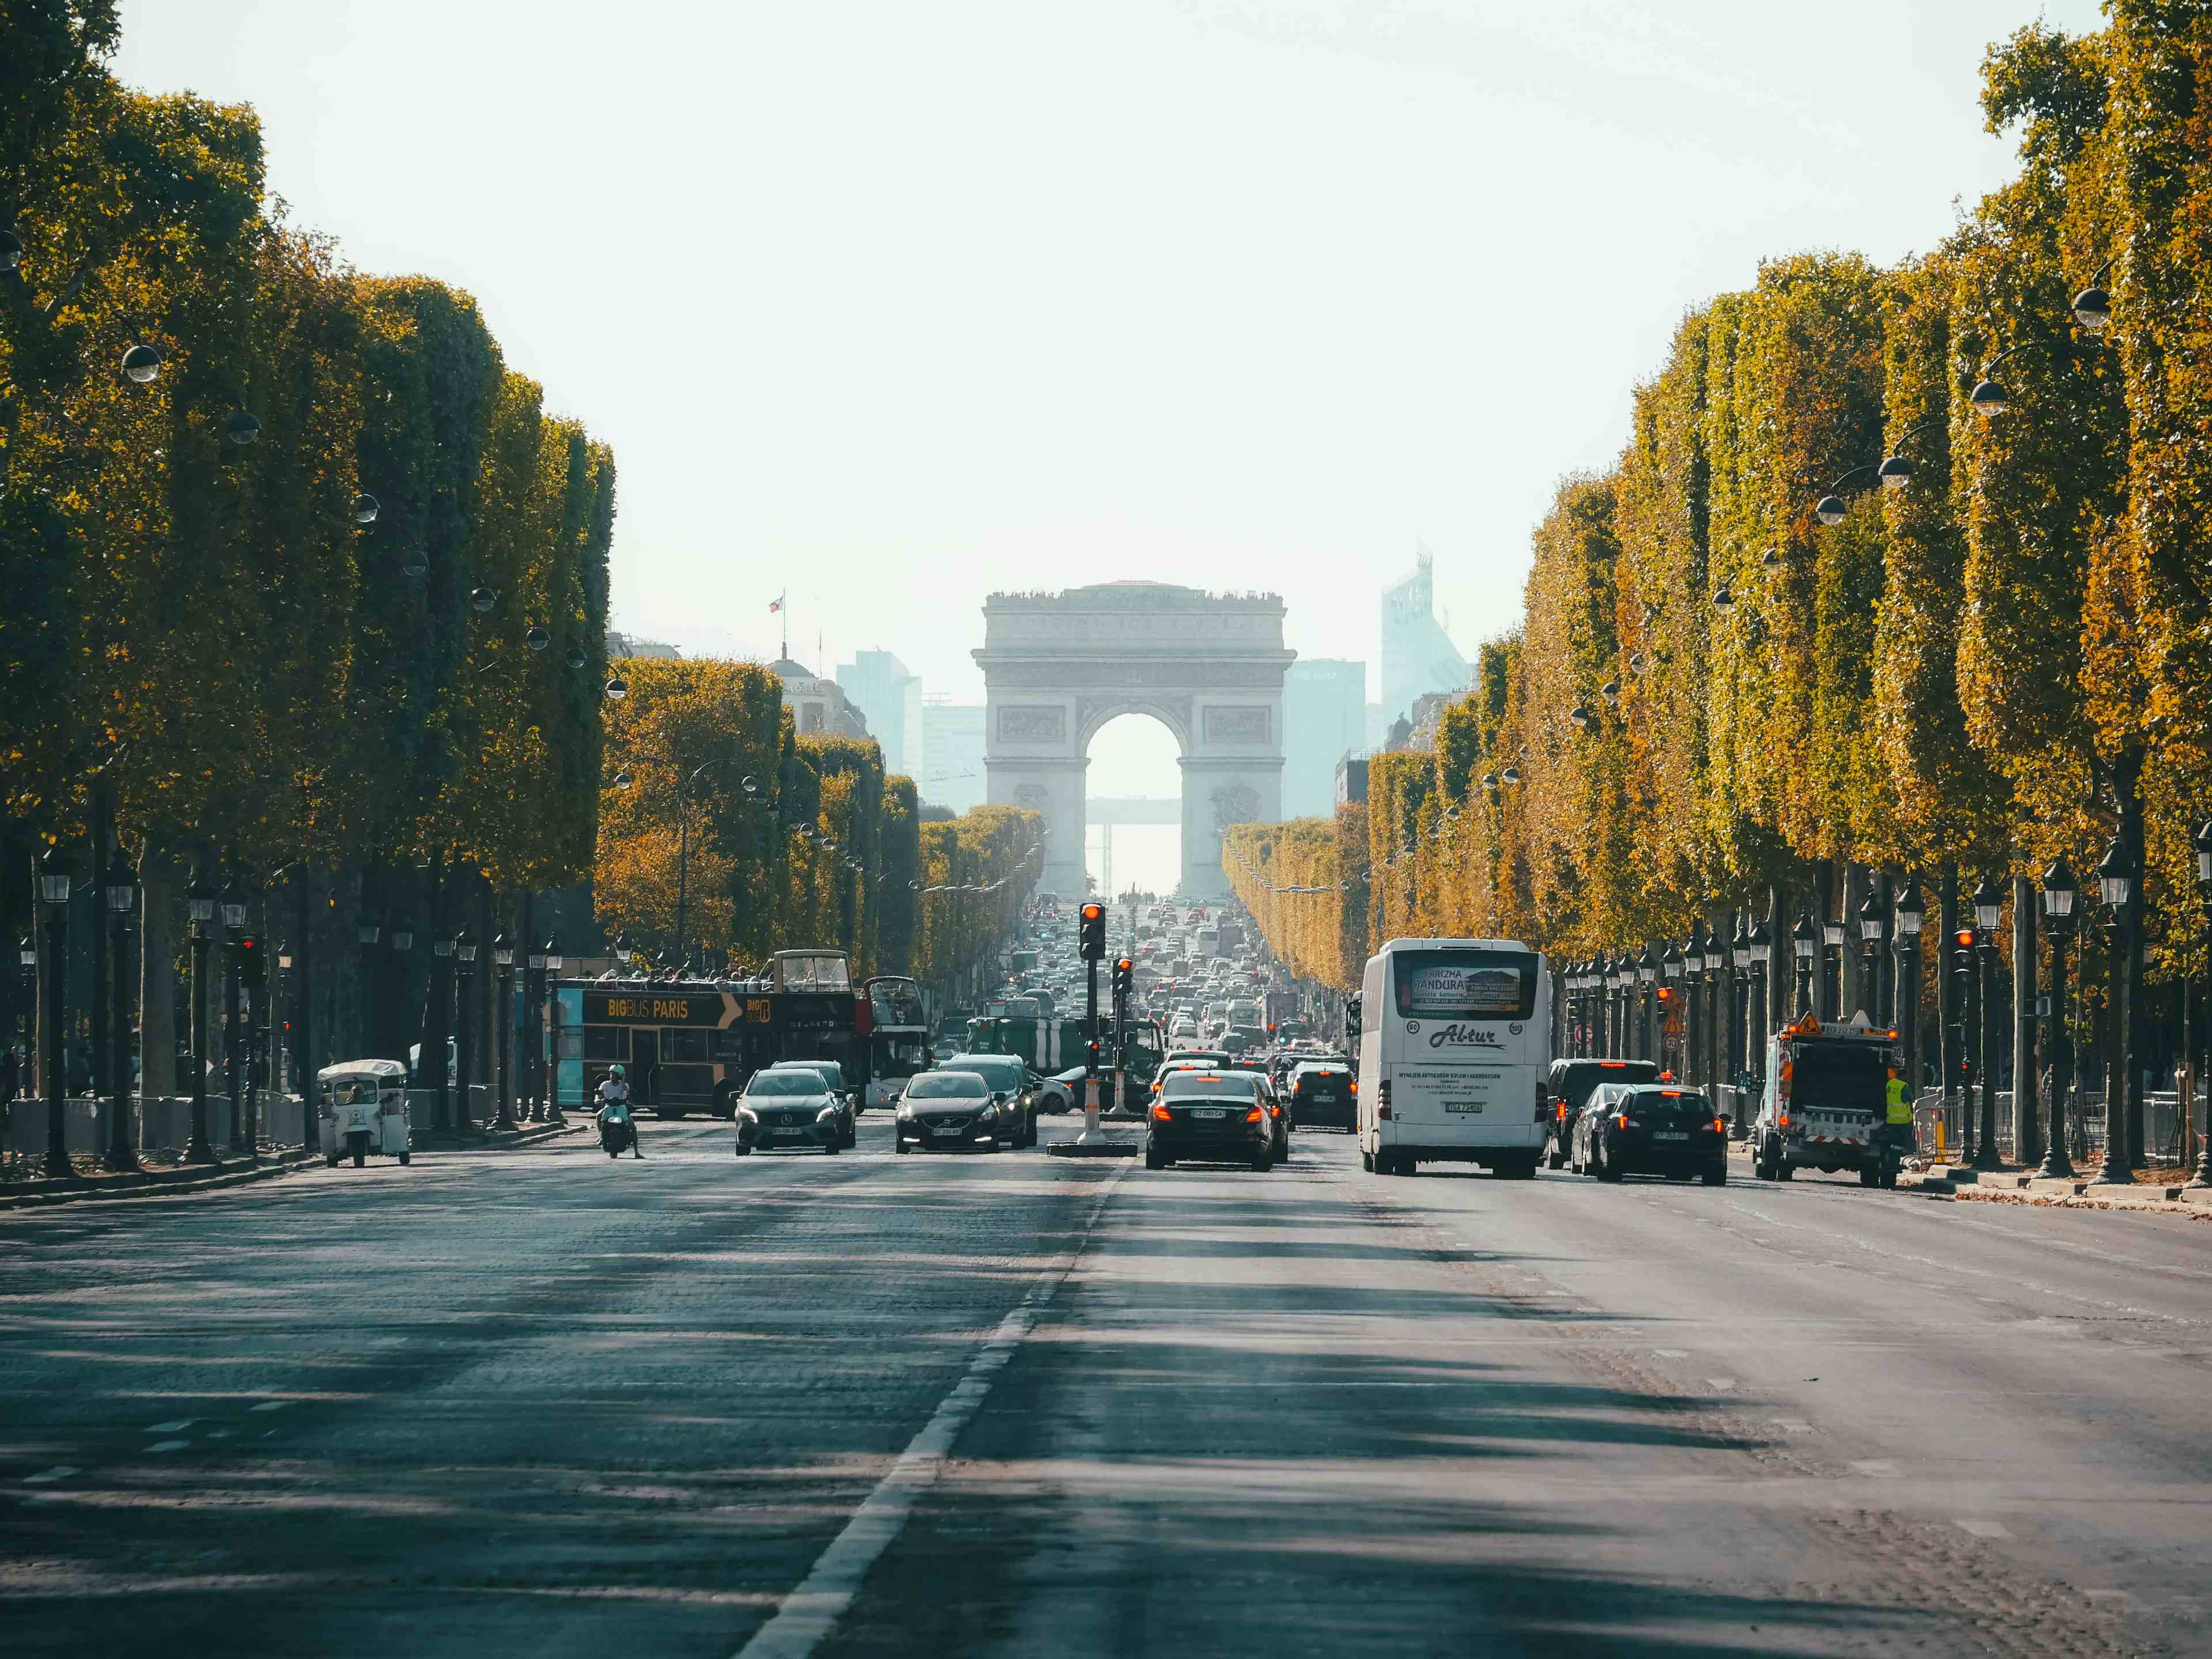 Strolling The Champs-Élysées: From Luxurious Boutiques To The Arc De Triomphe's Grandeur image